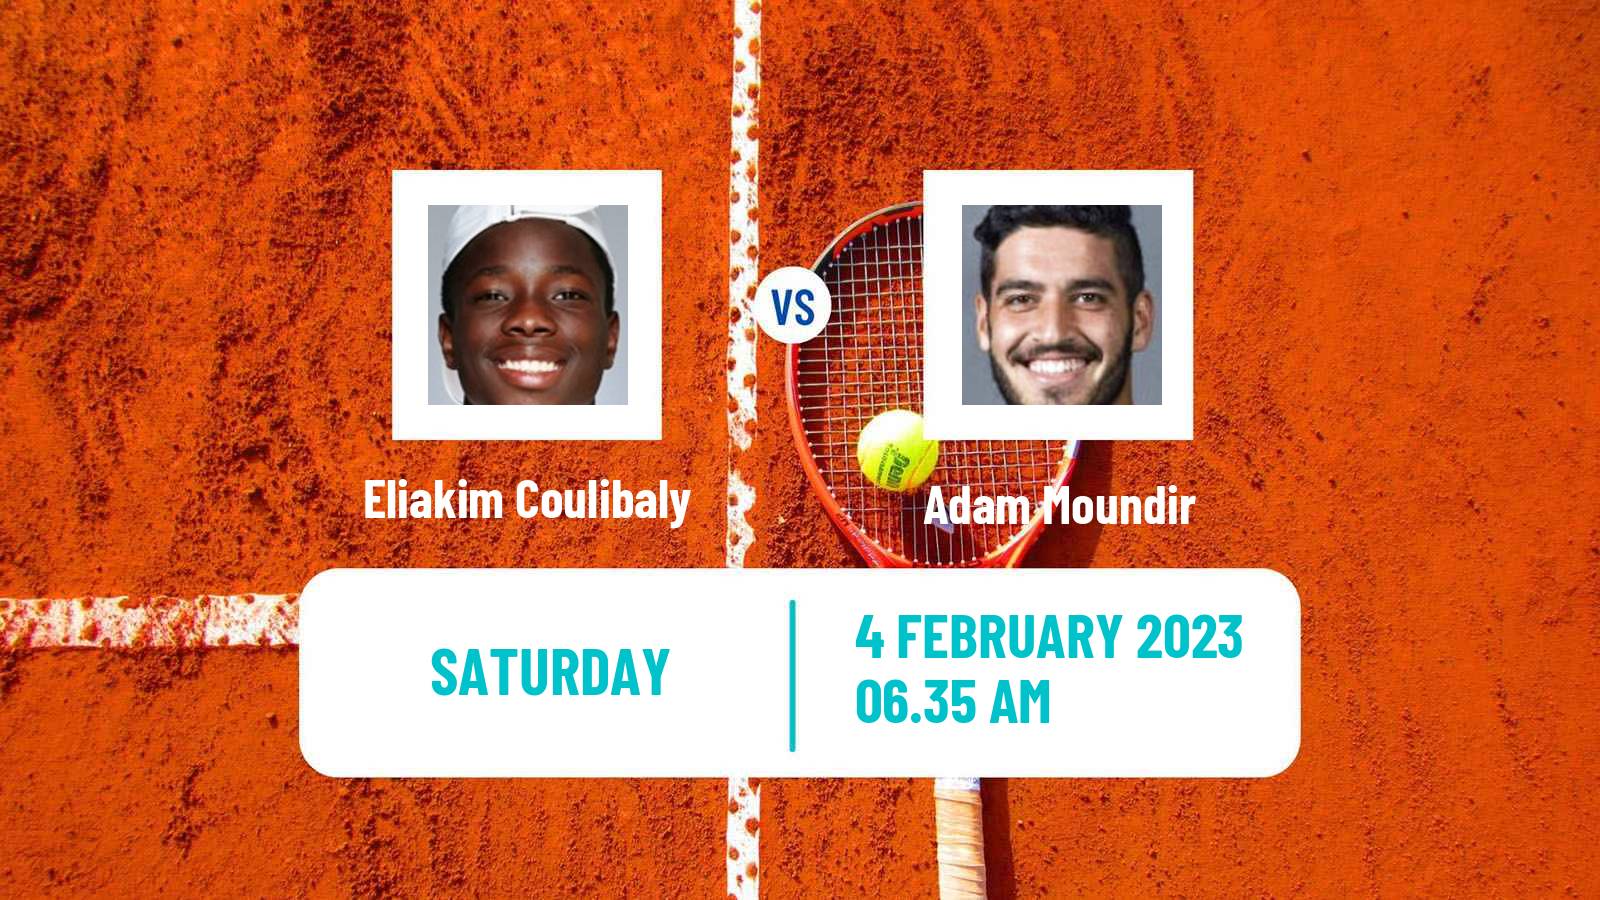 Tennis Davis Cup World Group II Eliakim Coulibaly - Adam Moundir